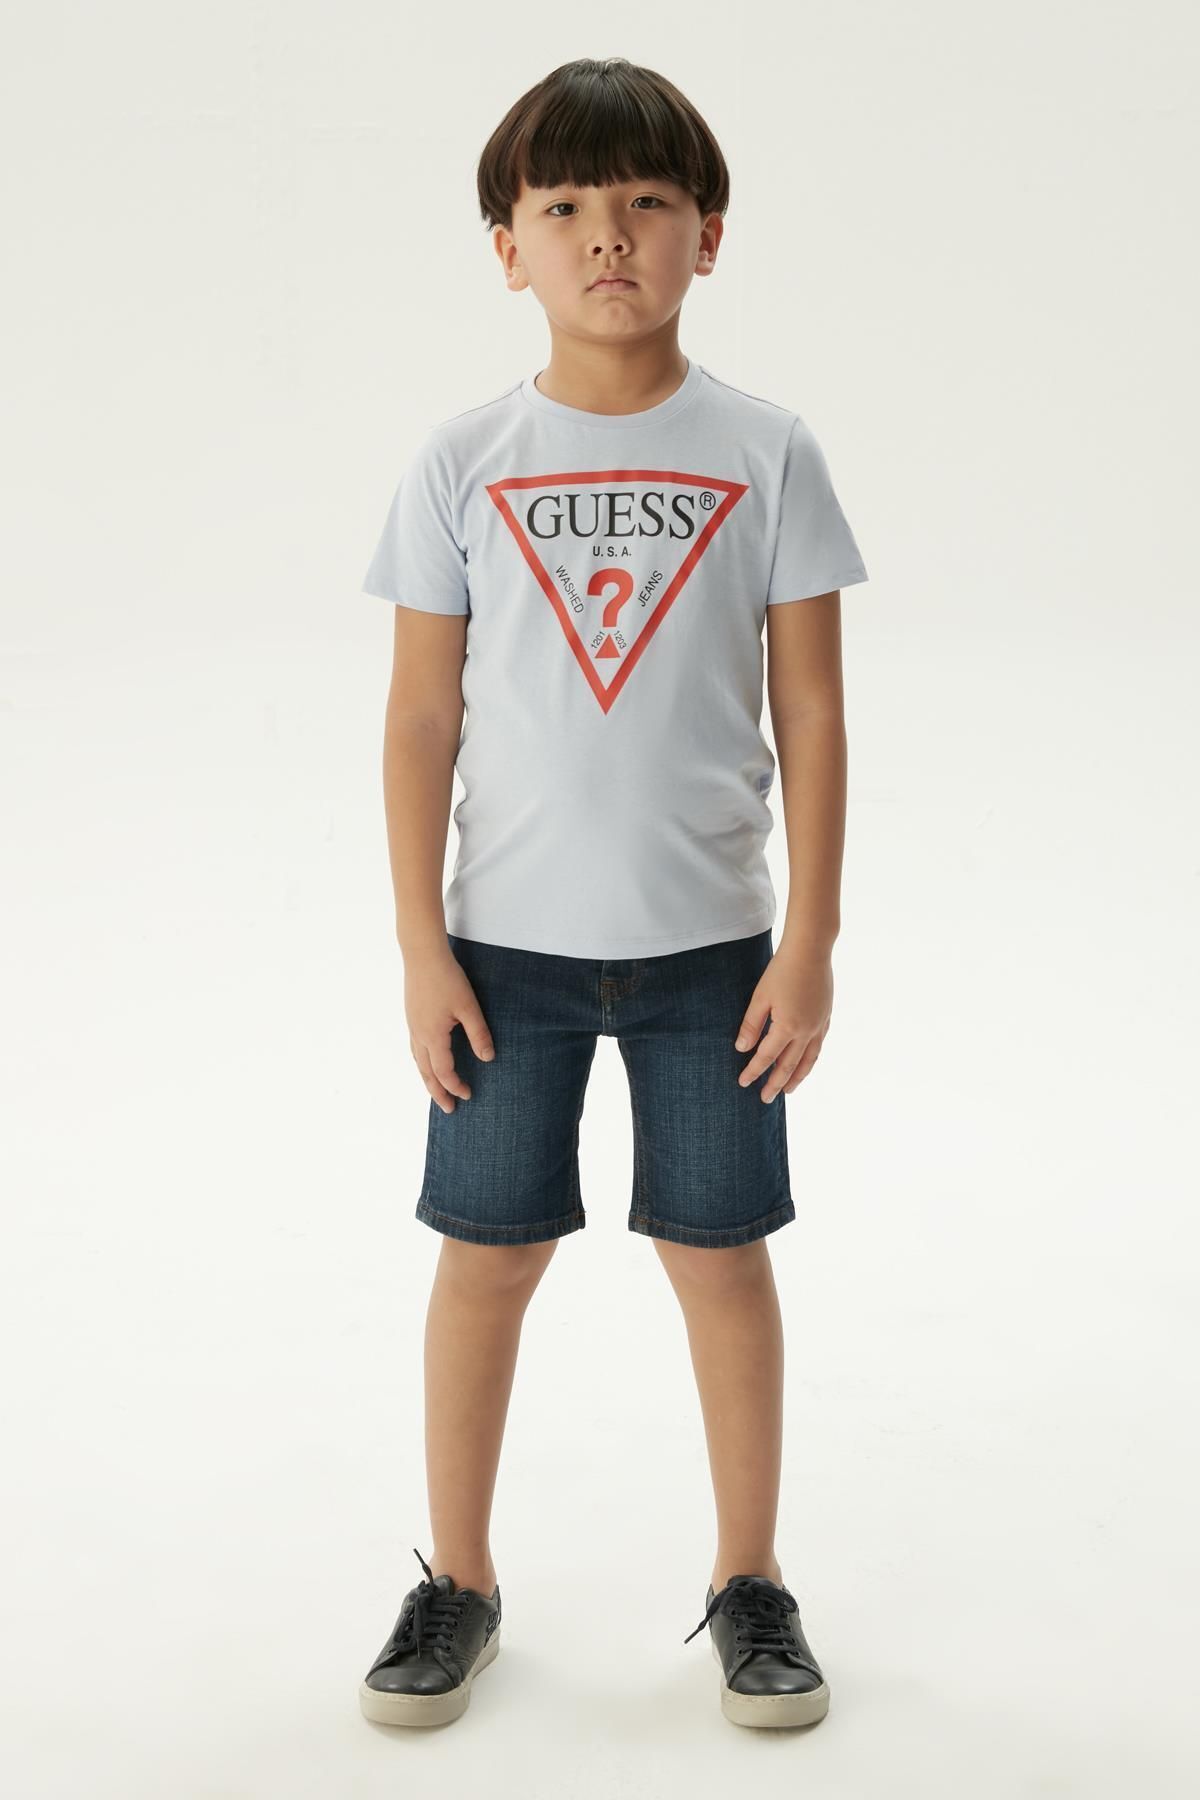 Guess BG Store Erkek Çocuk T-Shirt